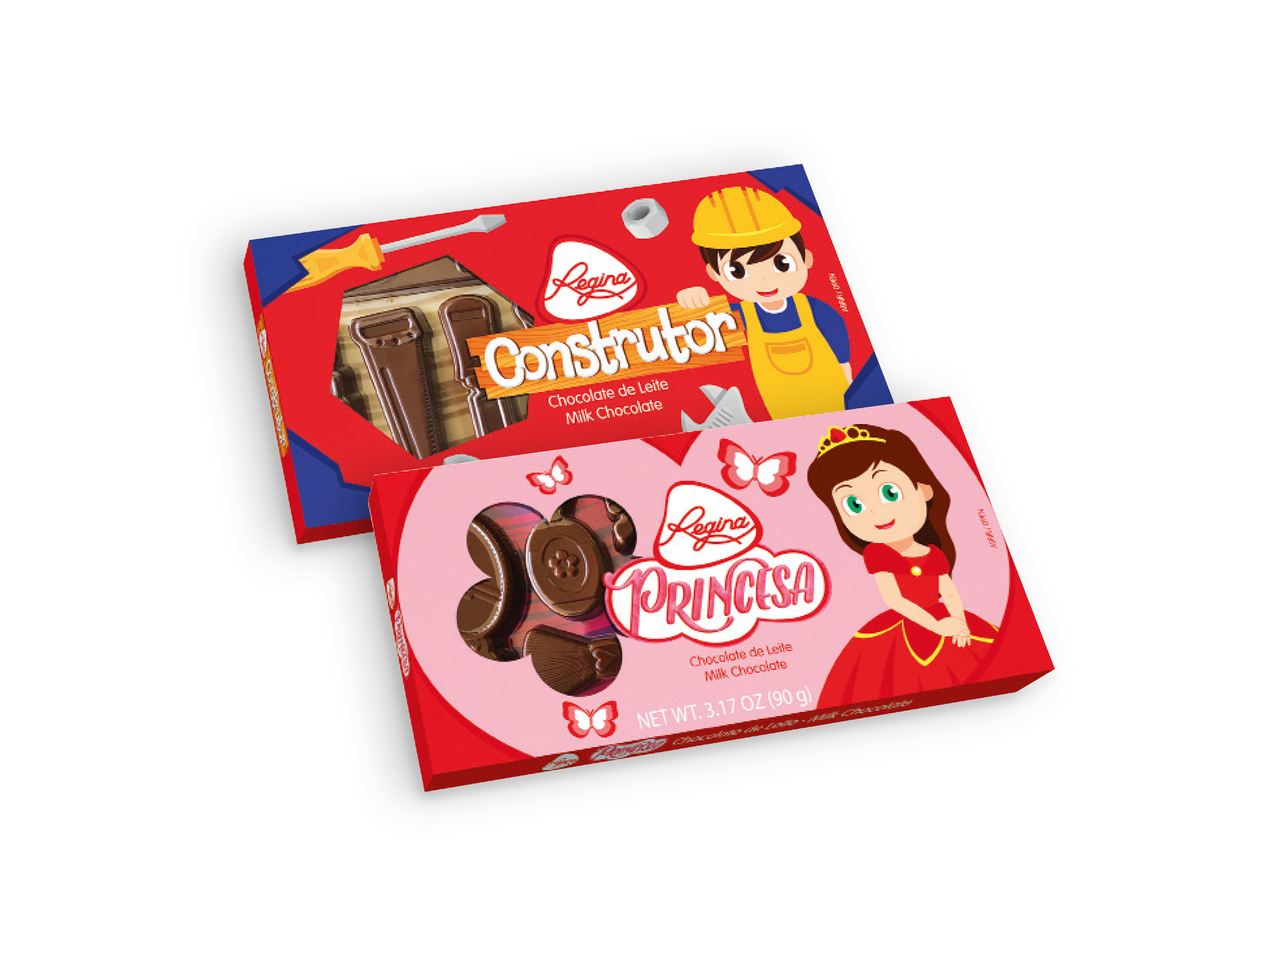 REGINA(R) Chocolate Princesa / Construtor